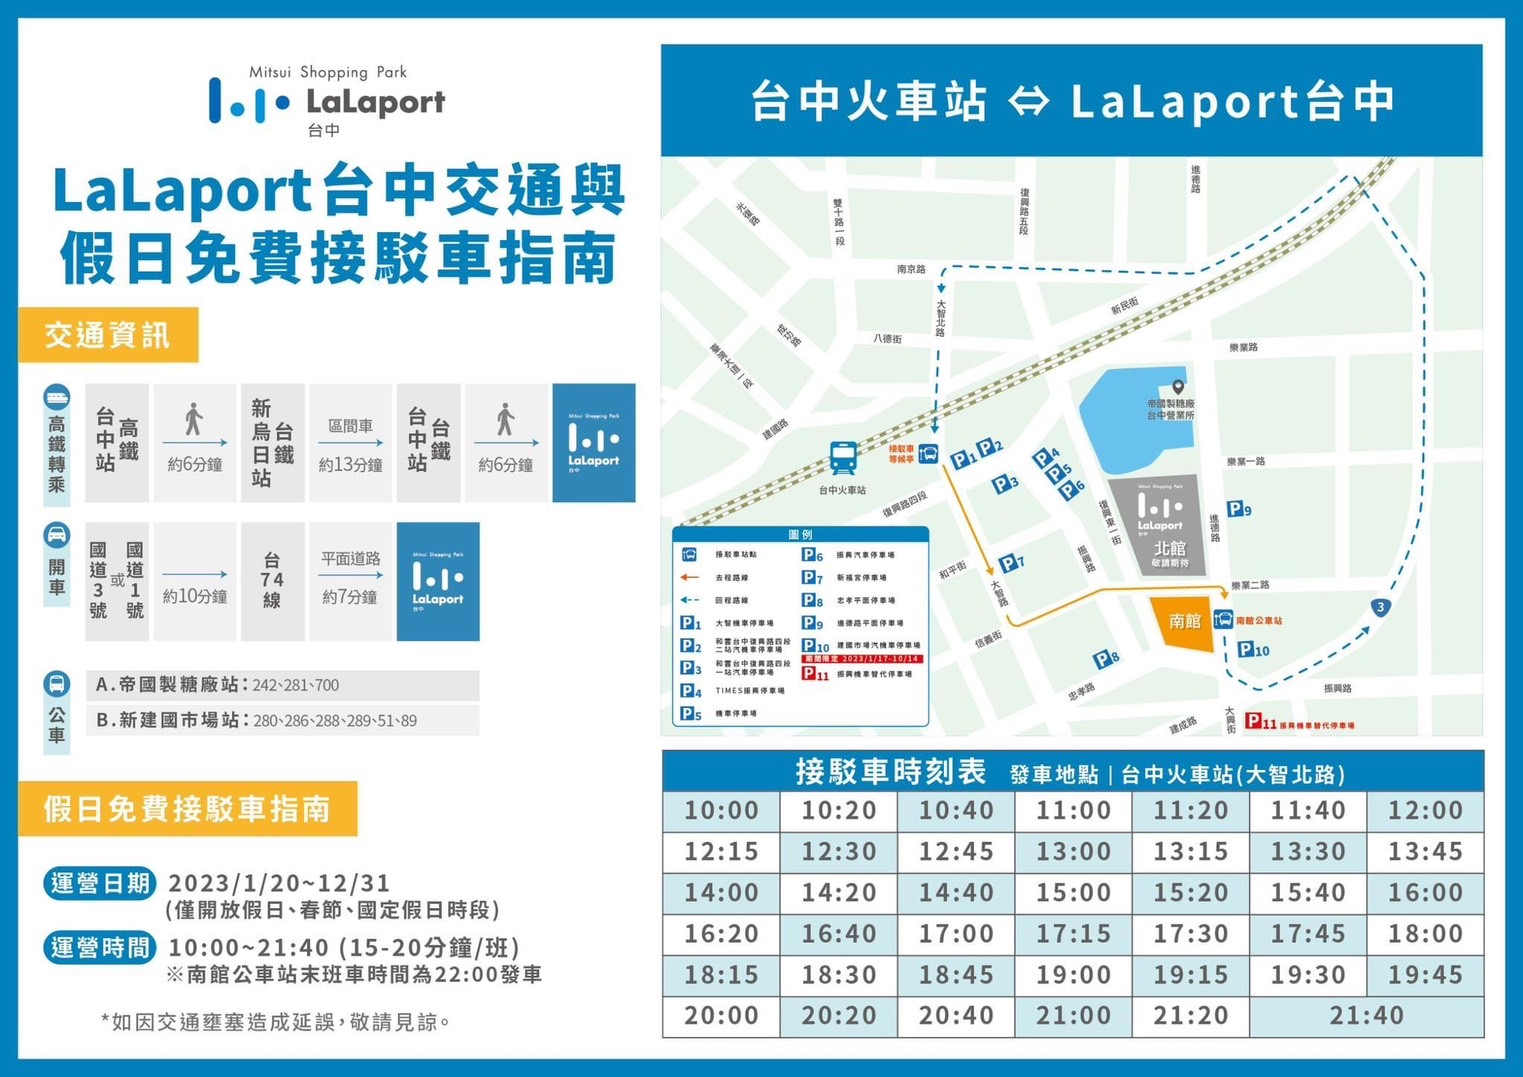 台中市東區最大購物中心LaLaport試營運啦！今天栗子就帶大家看看整體的購物中心內部長怎樣吧－台中市購物中心LaLaport開箱